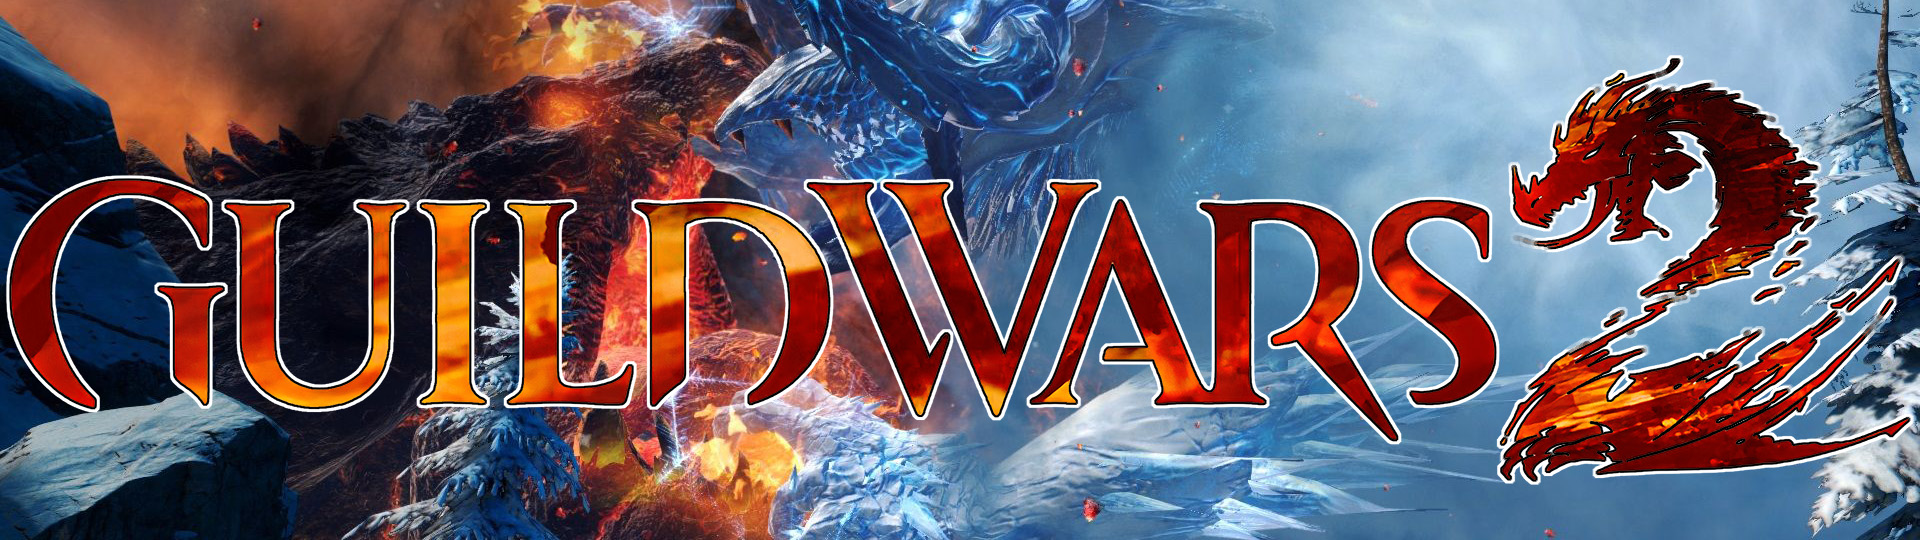 Raid - Guild Wars 2 Wiki (GW2W)